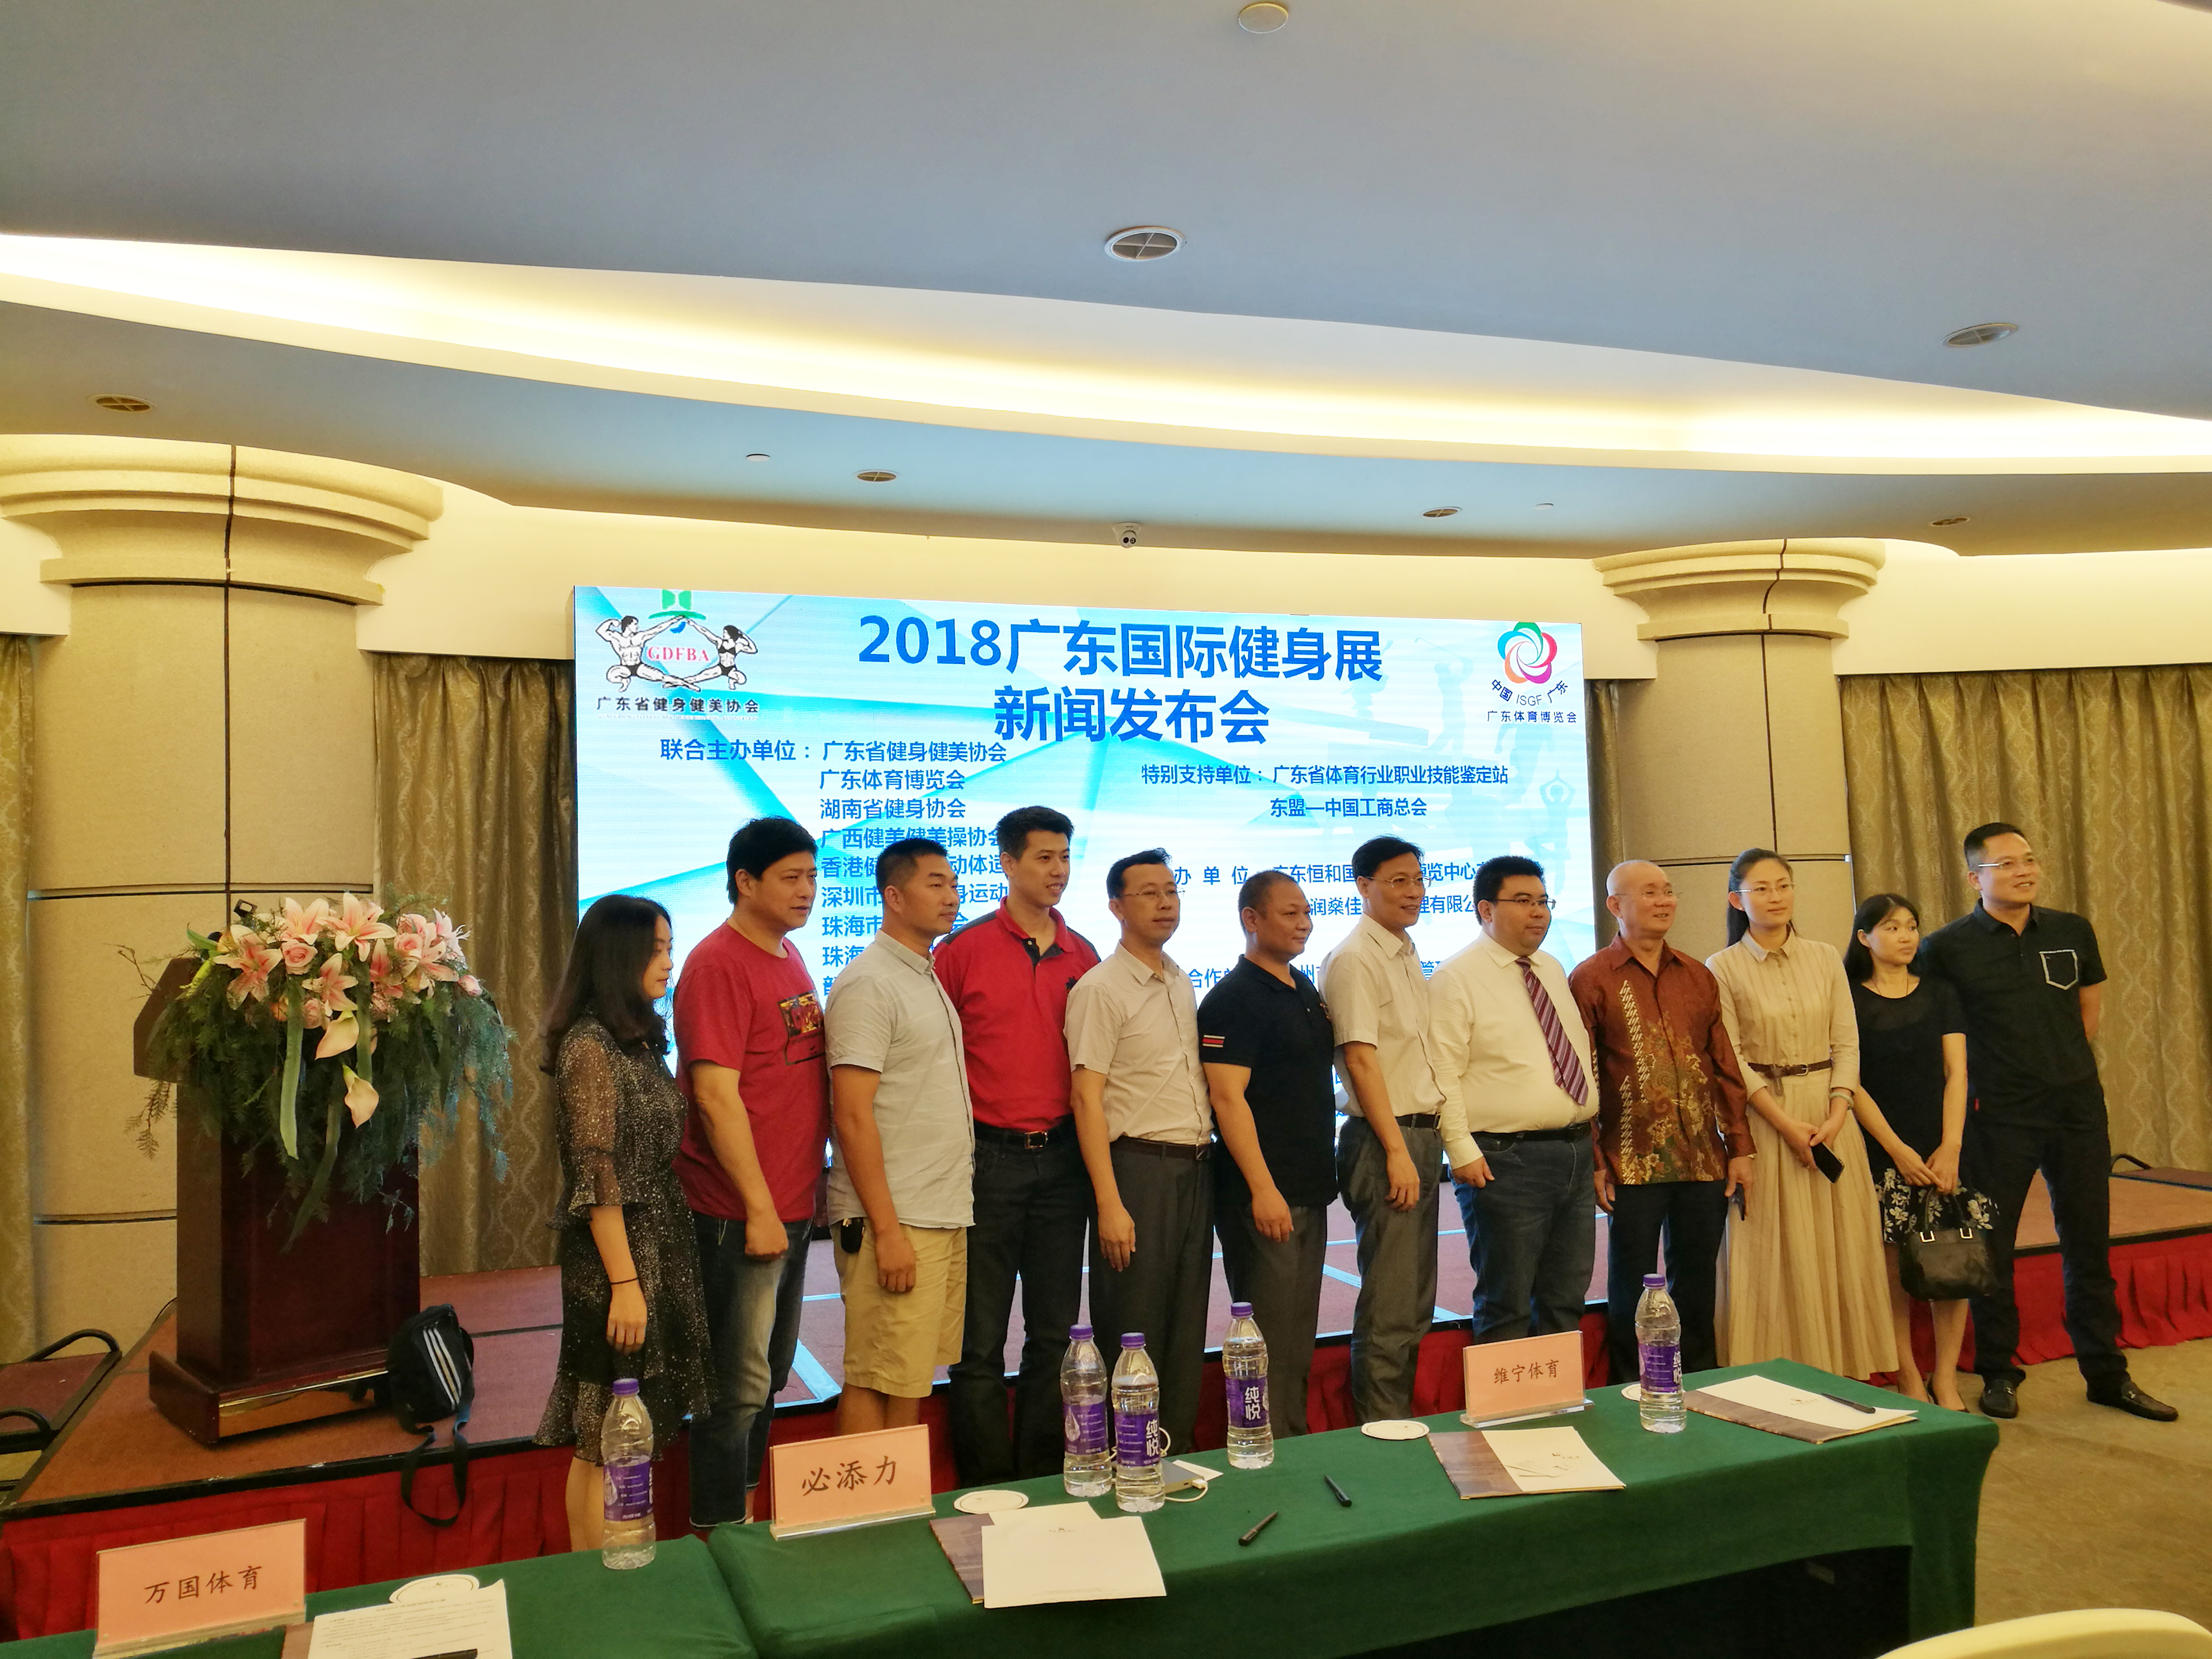 2018年广东国际健身展与体博会将同期举行